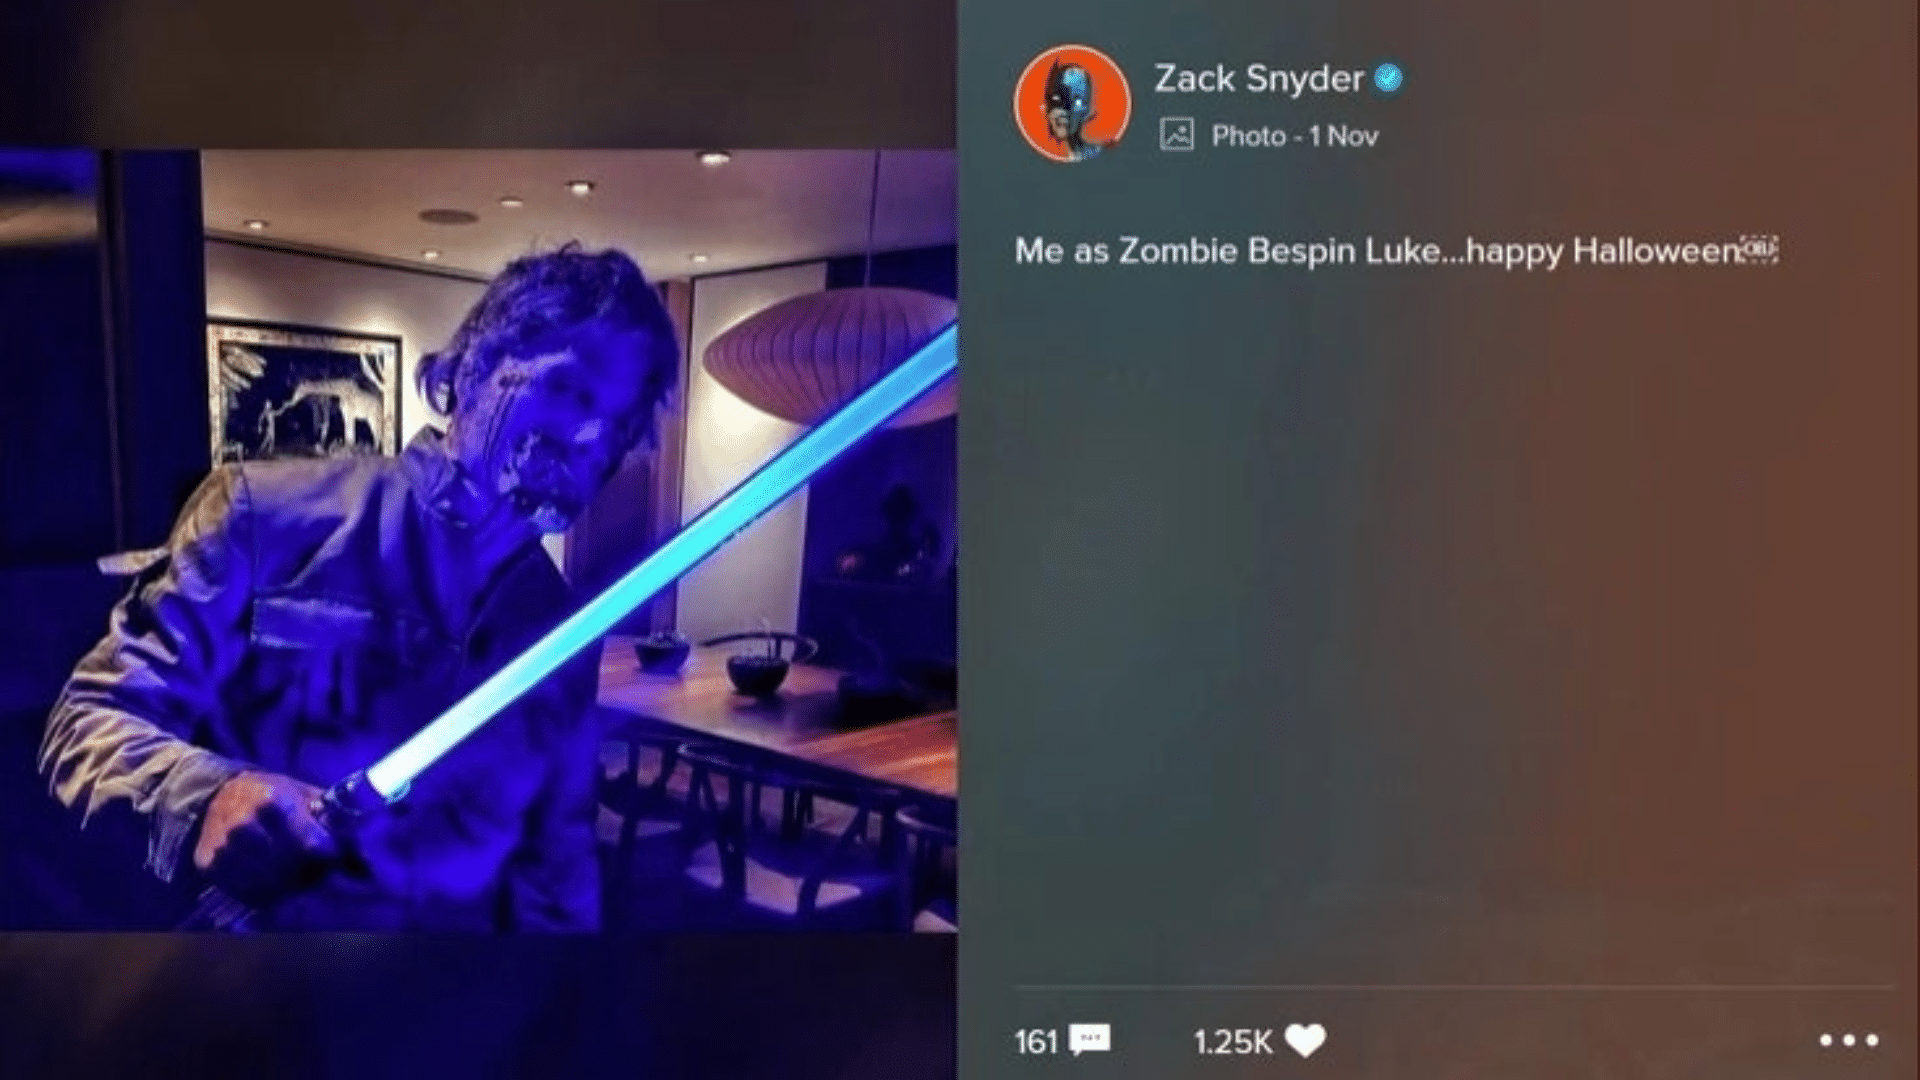 Zack Snyder as Zombie Luke Skywalker for Halloween